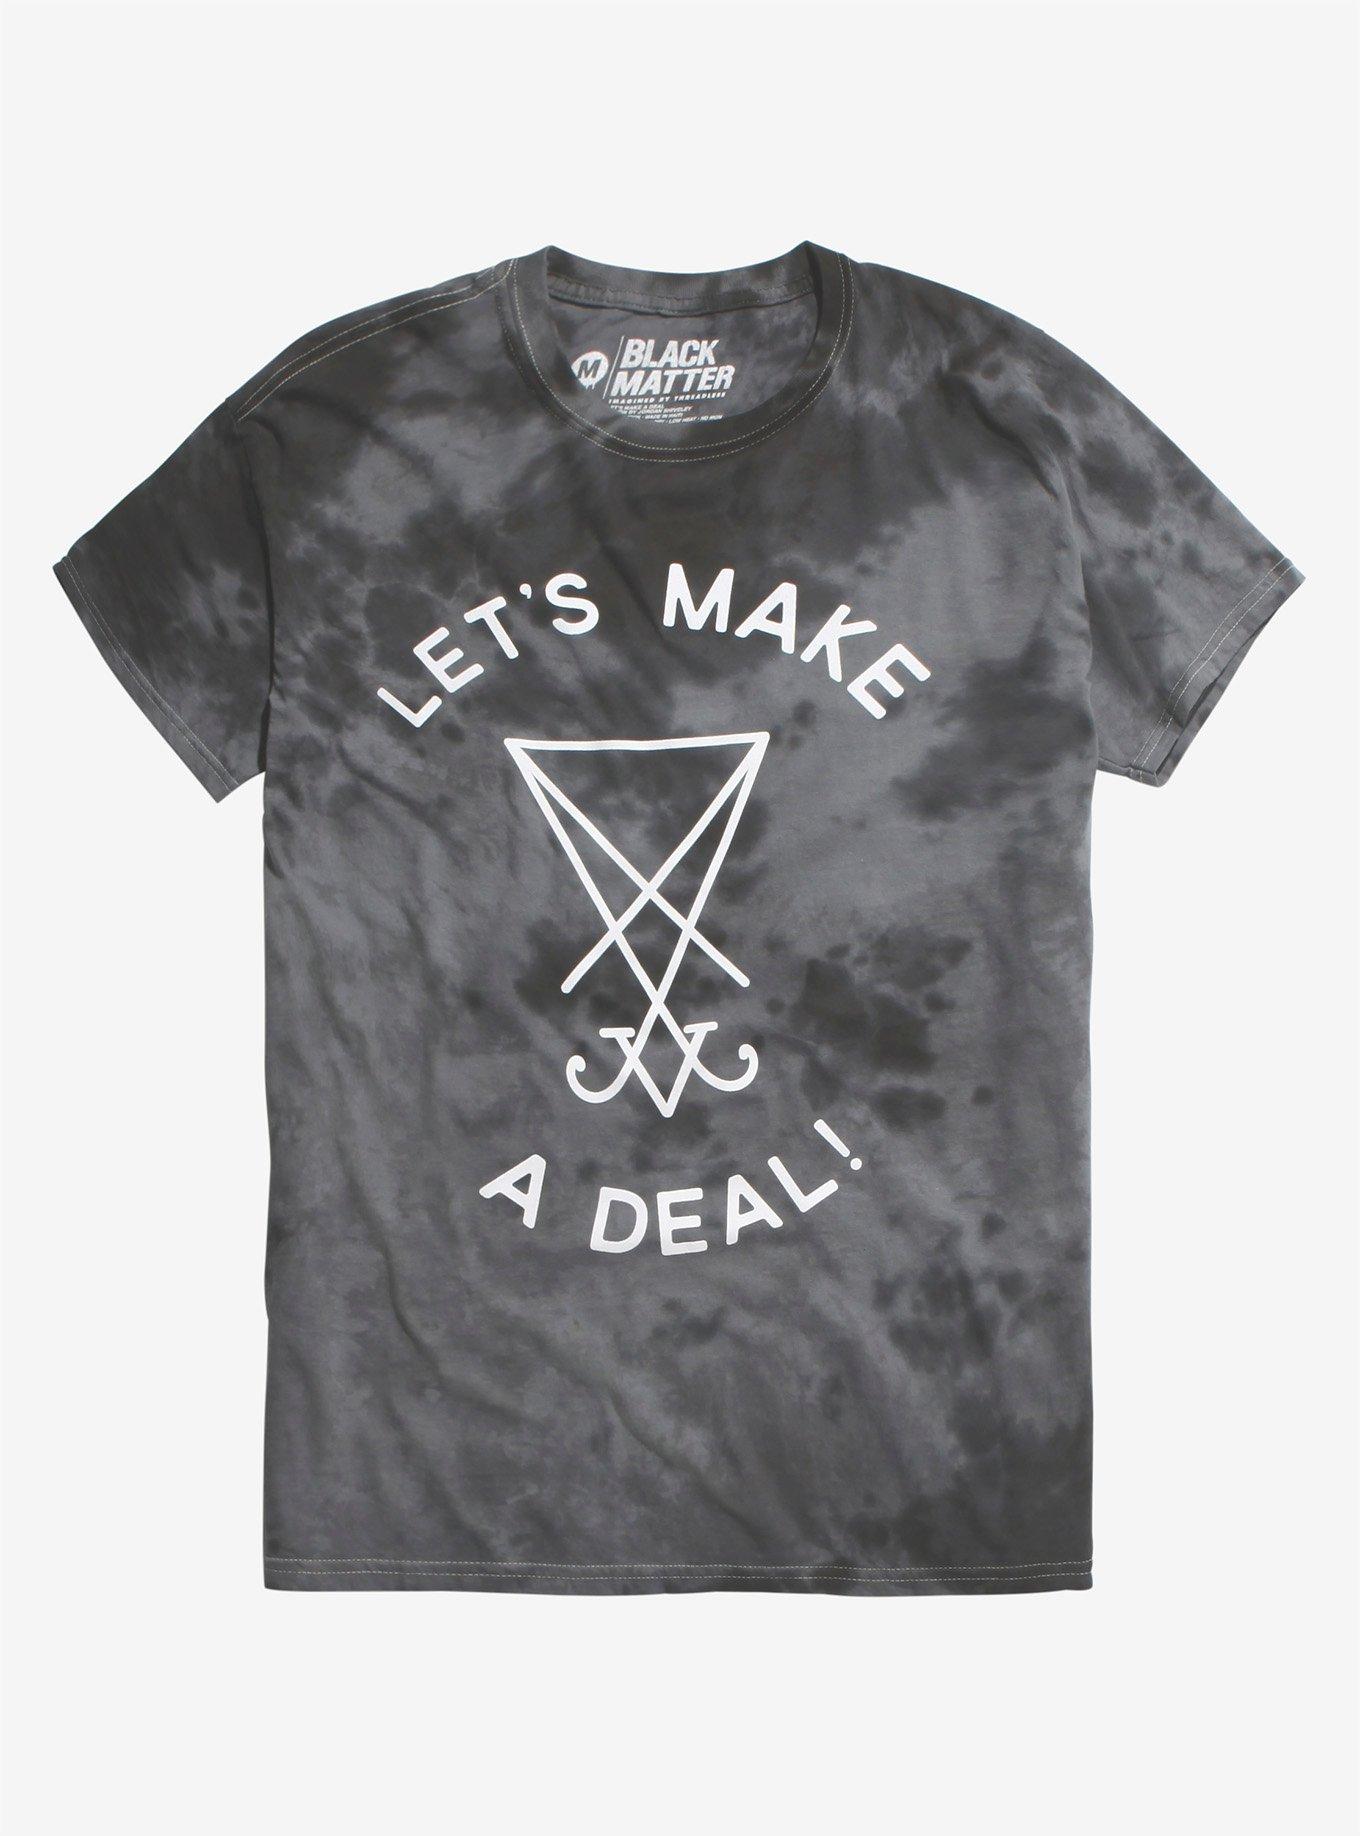 Make A Deal Wash T-Shirt, MULTI, hi-res